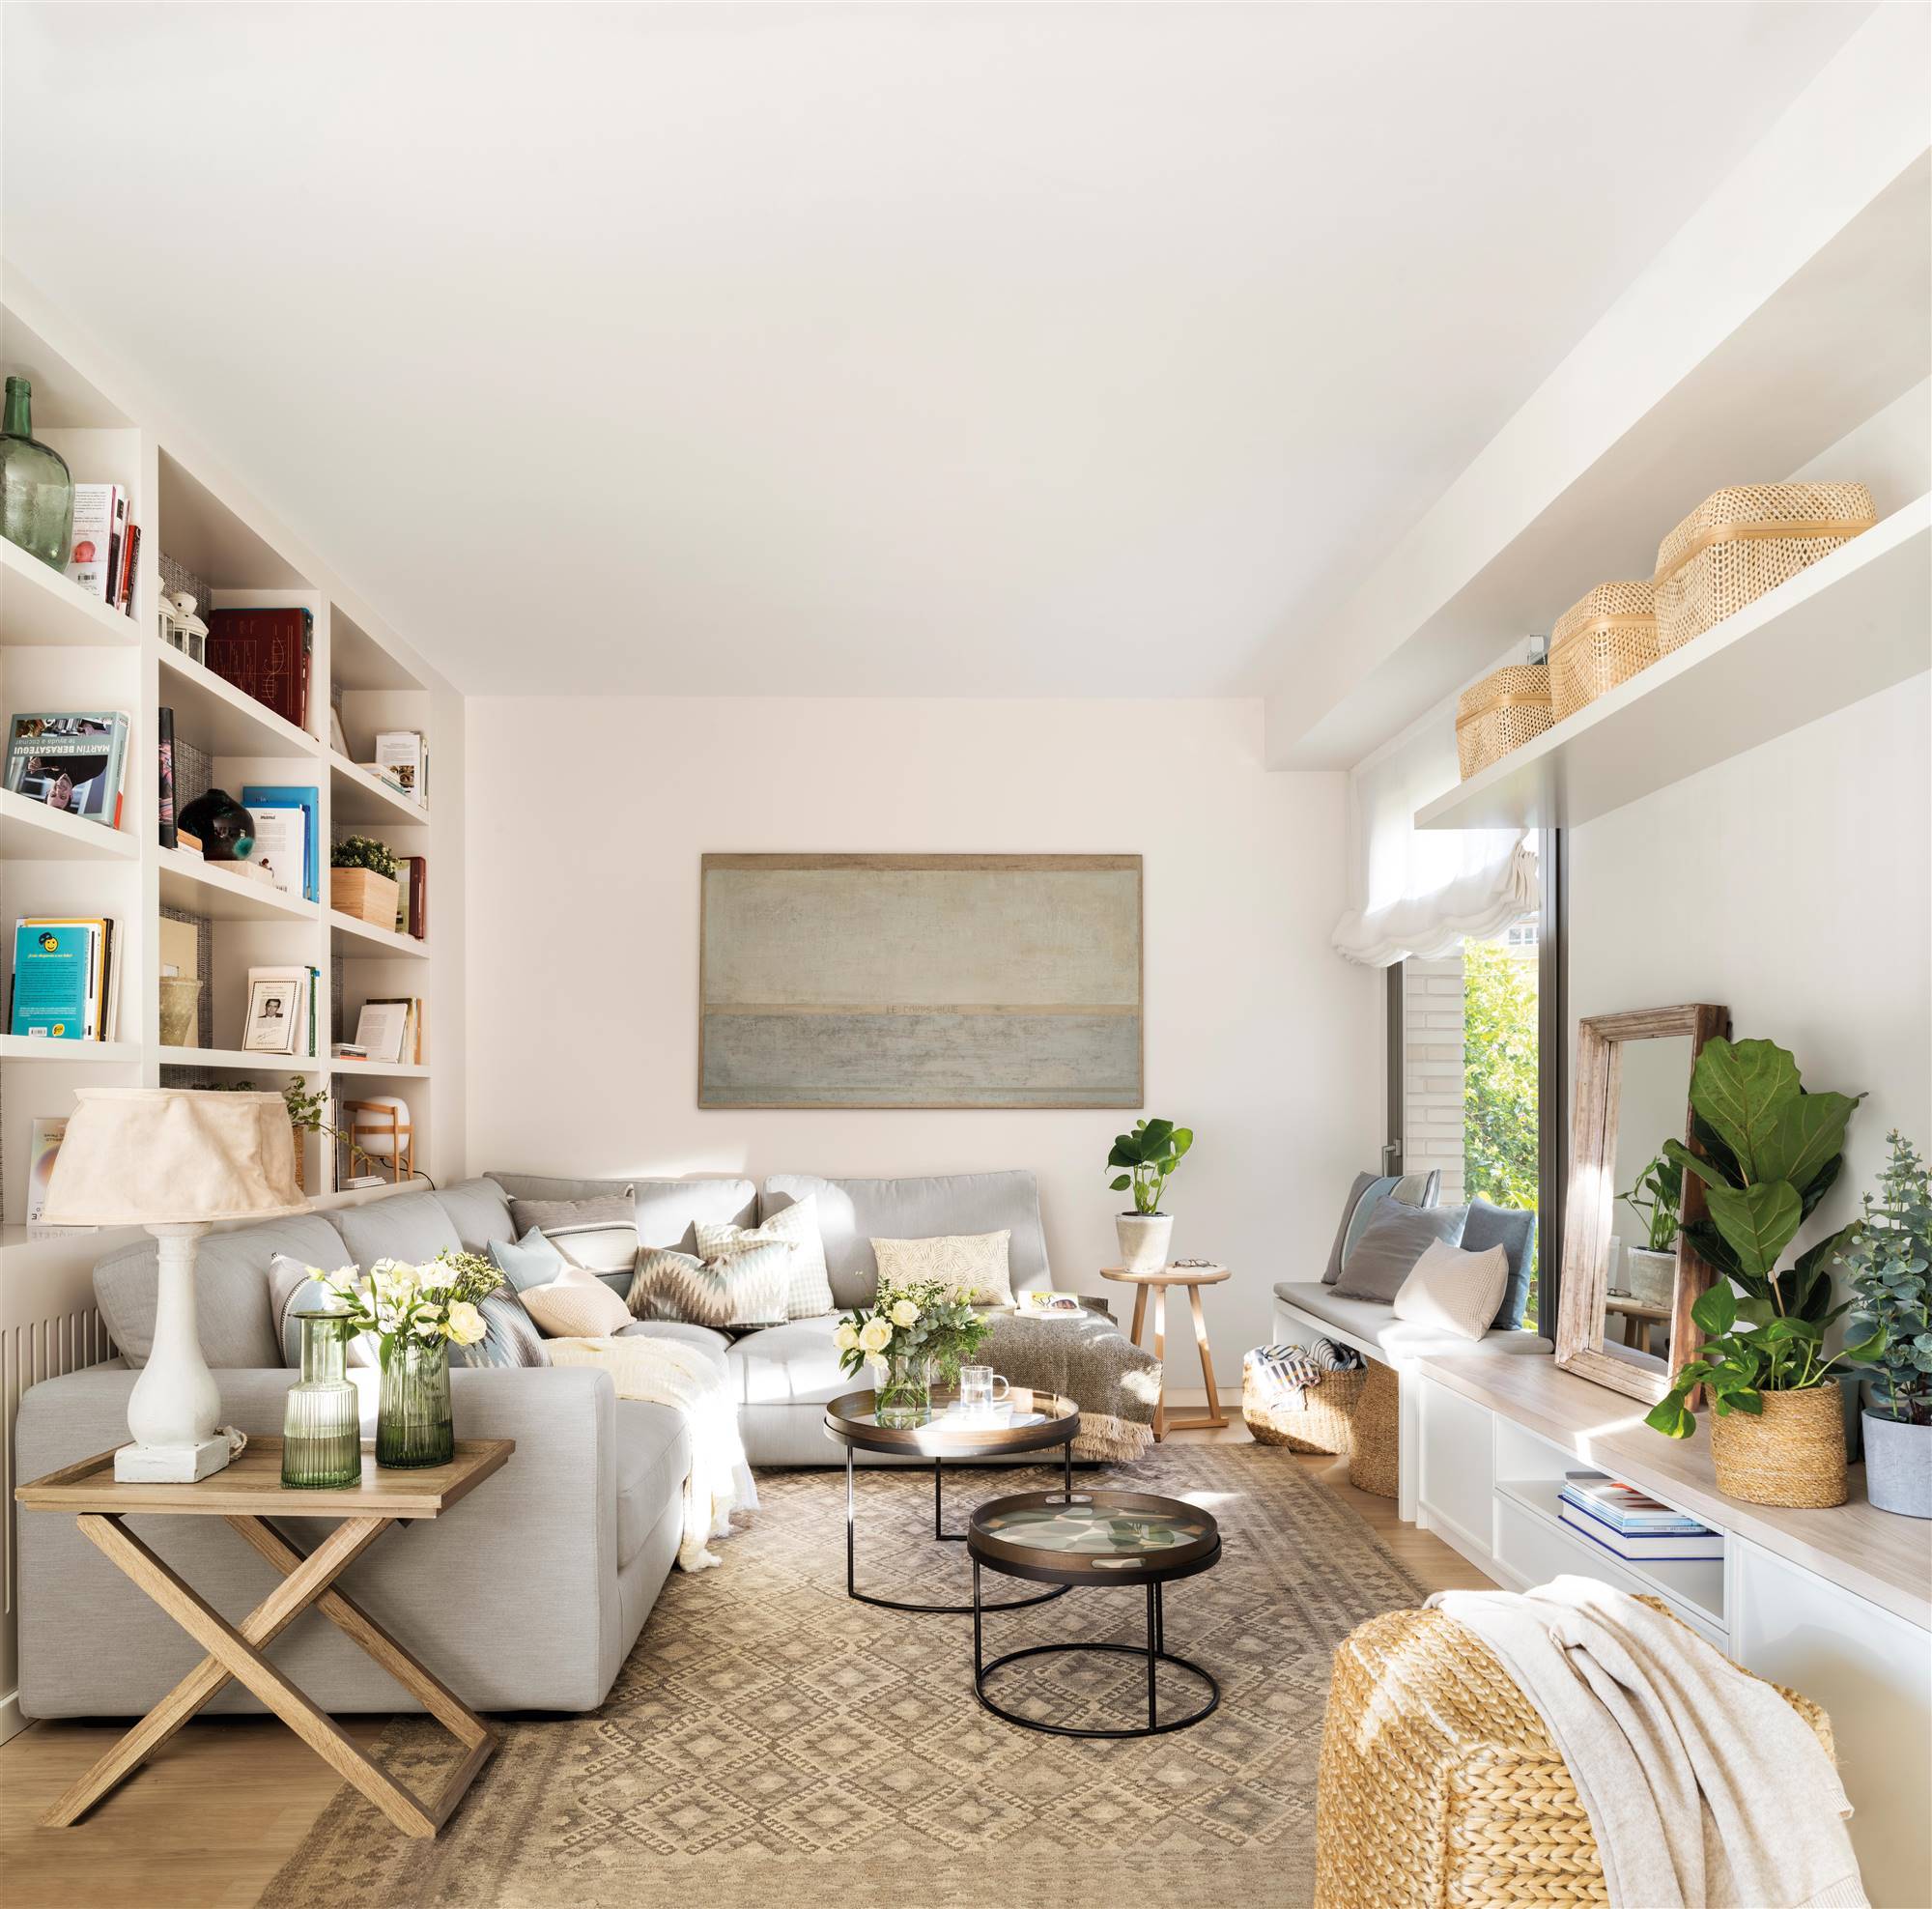 Salón con sofá rinconero de color gris y alfombra kilim en colores neutros. 